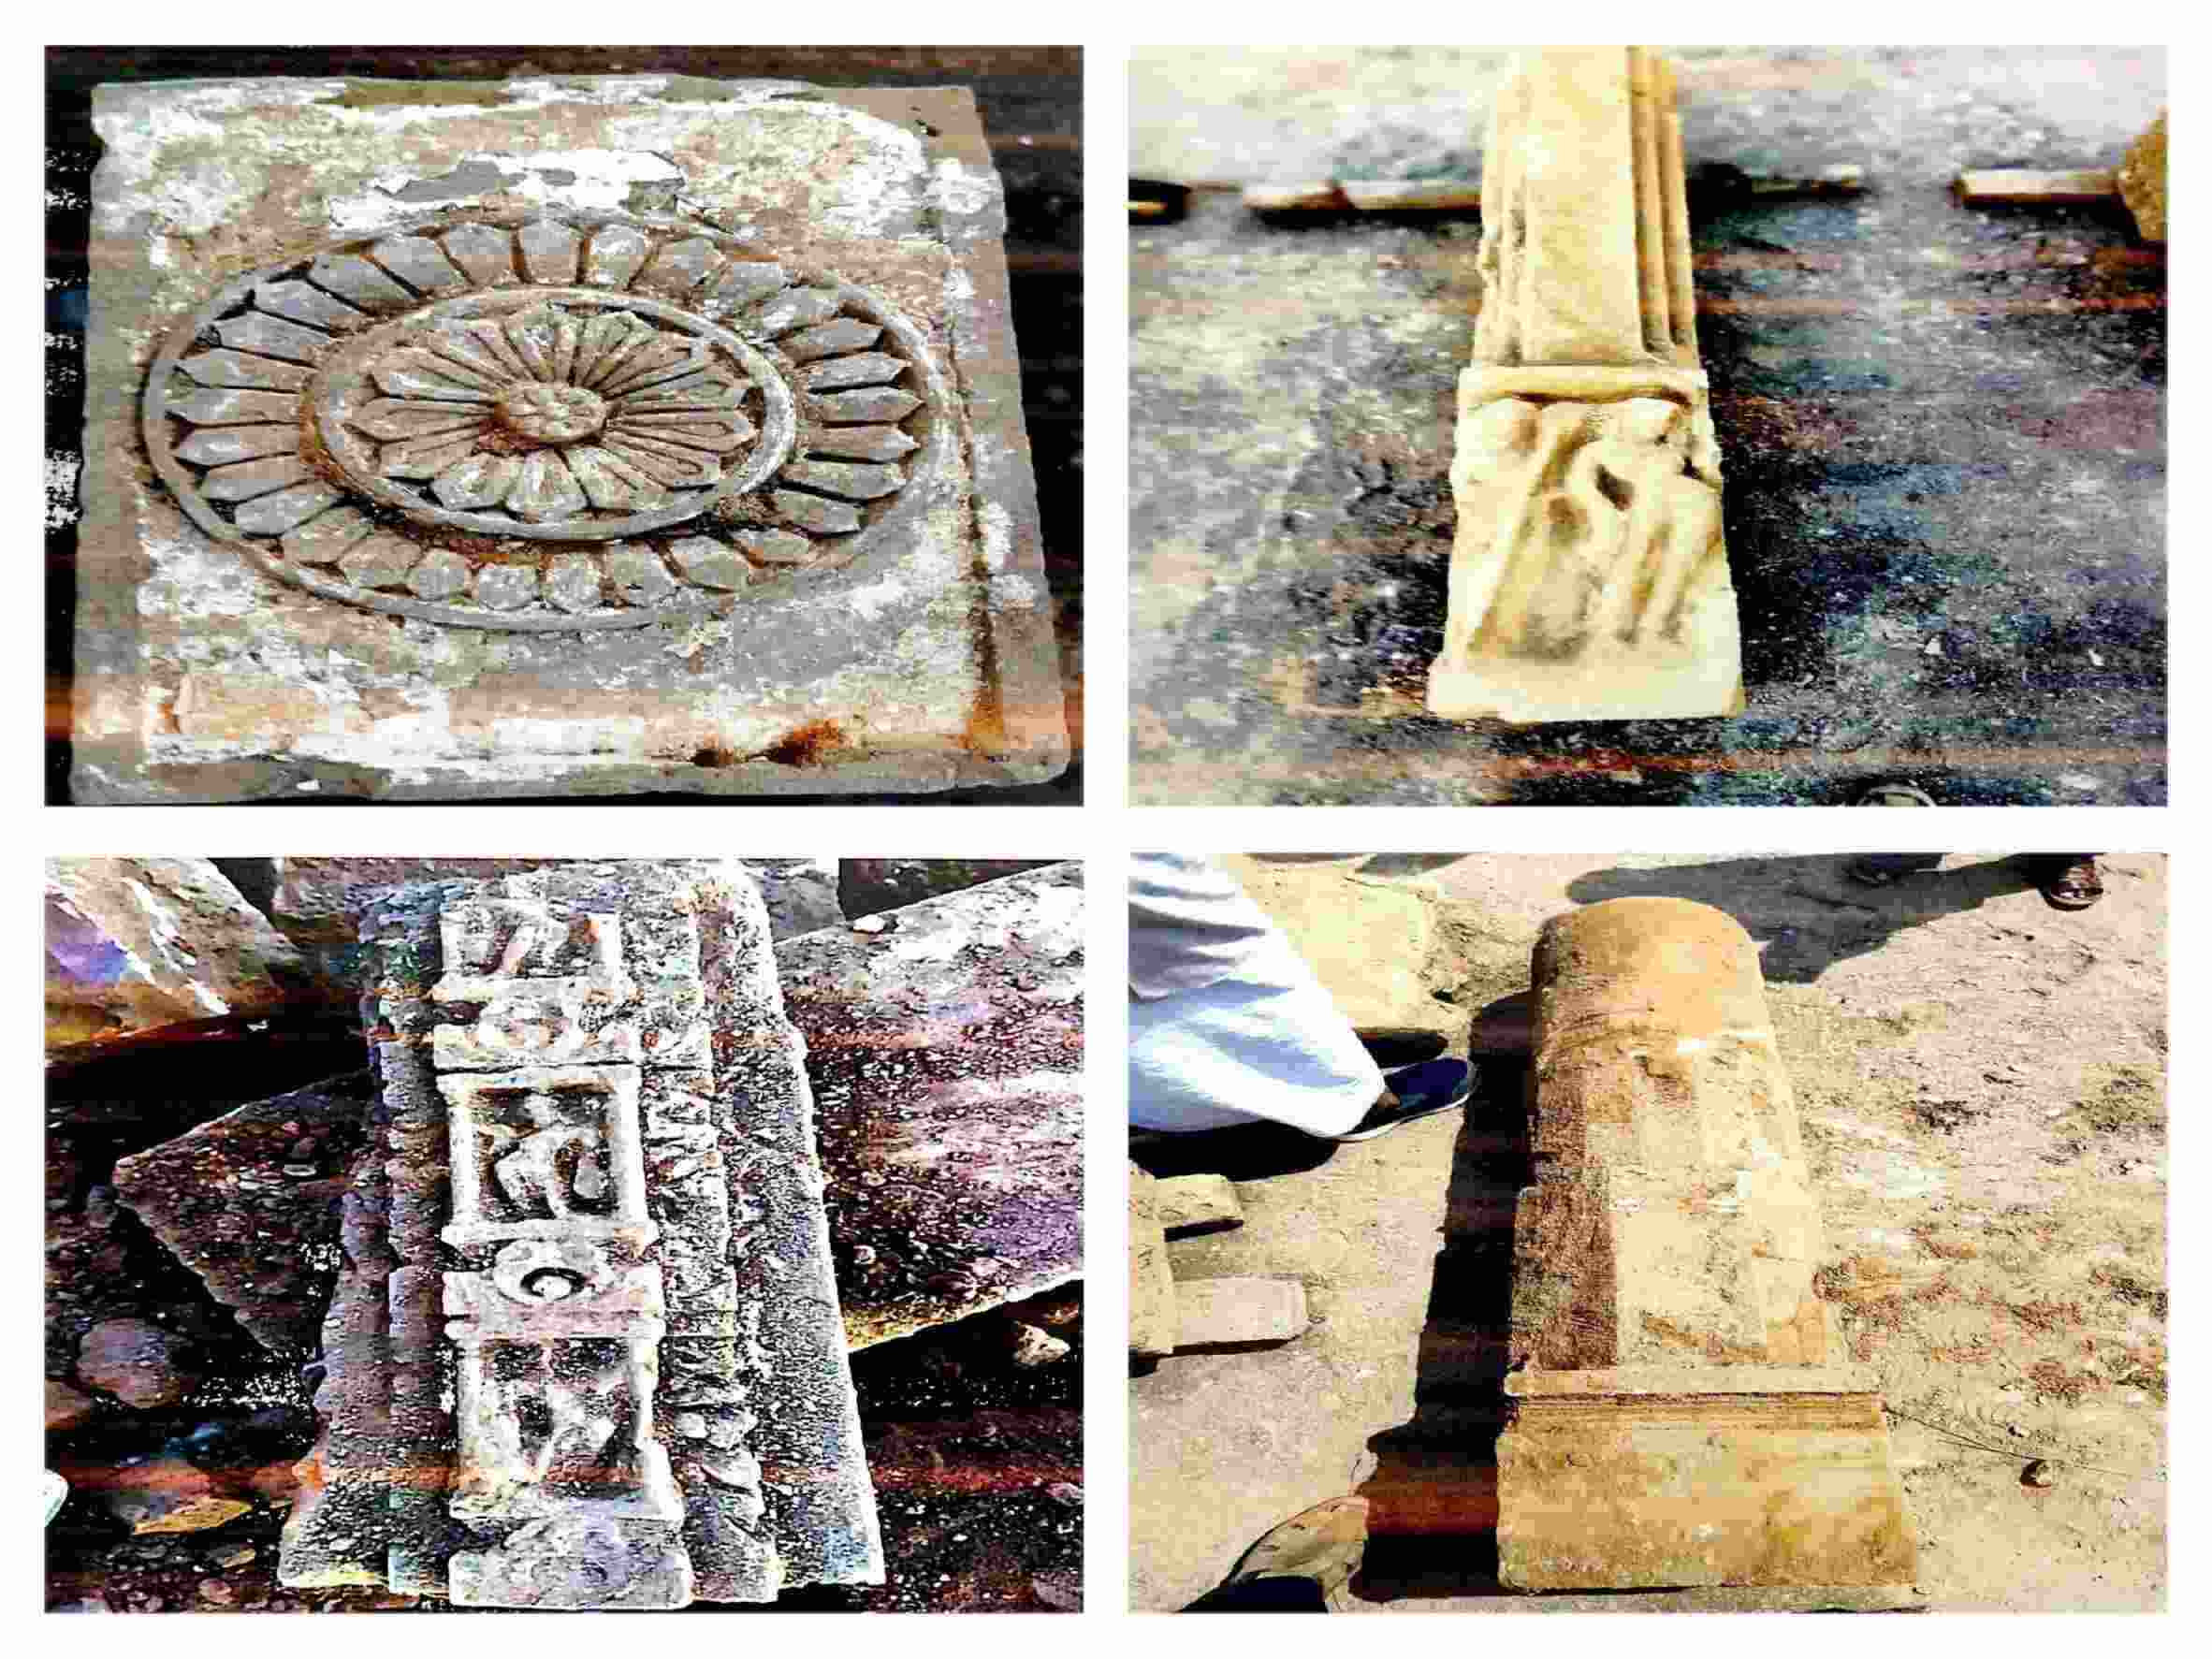 Idols, Shivalinga found at Ayodhya site; netizens claim Buddhist heritage